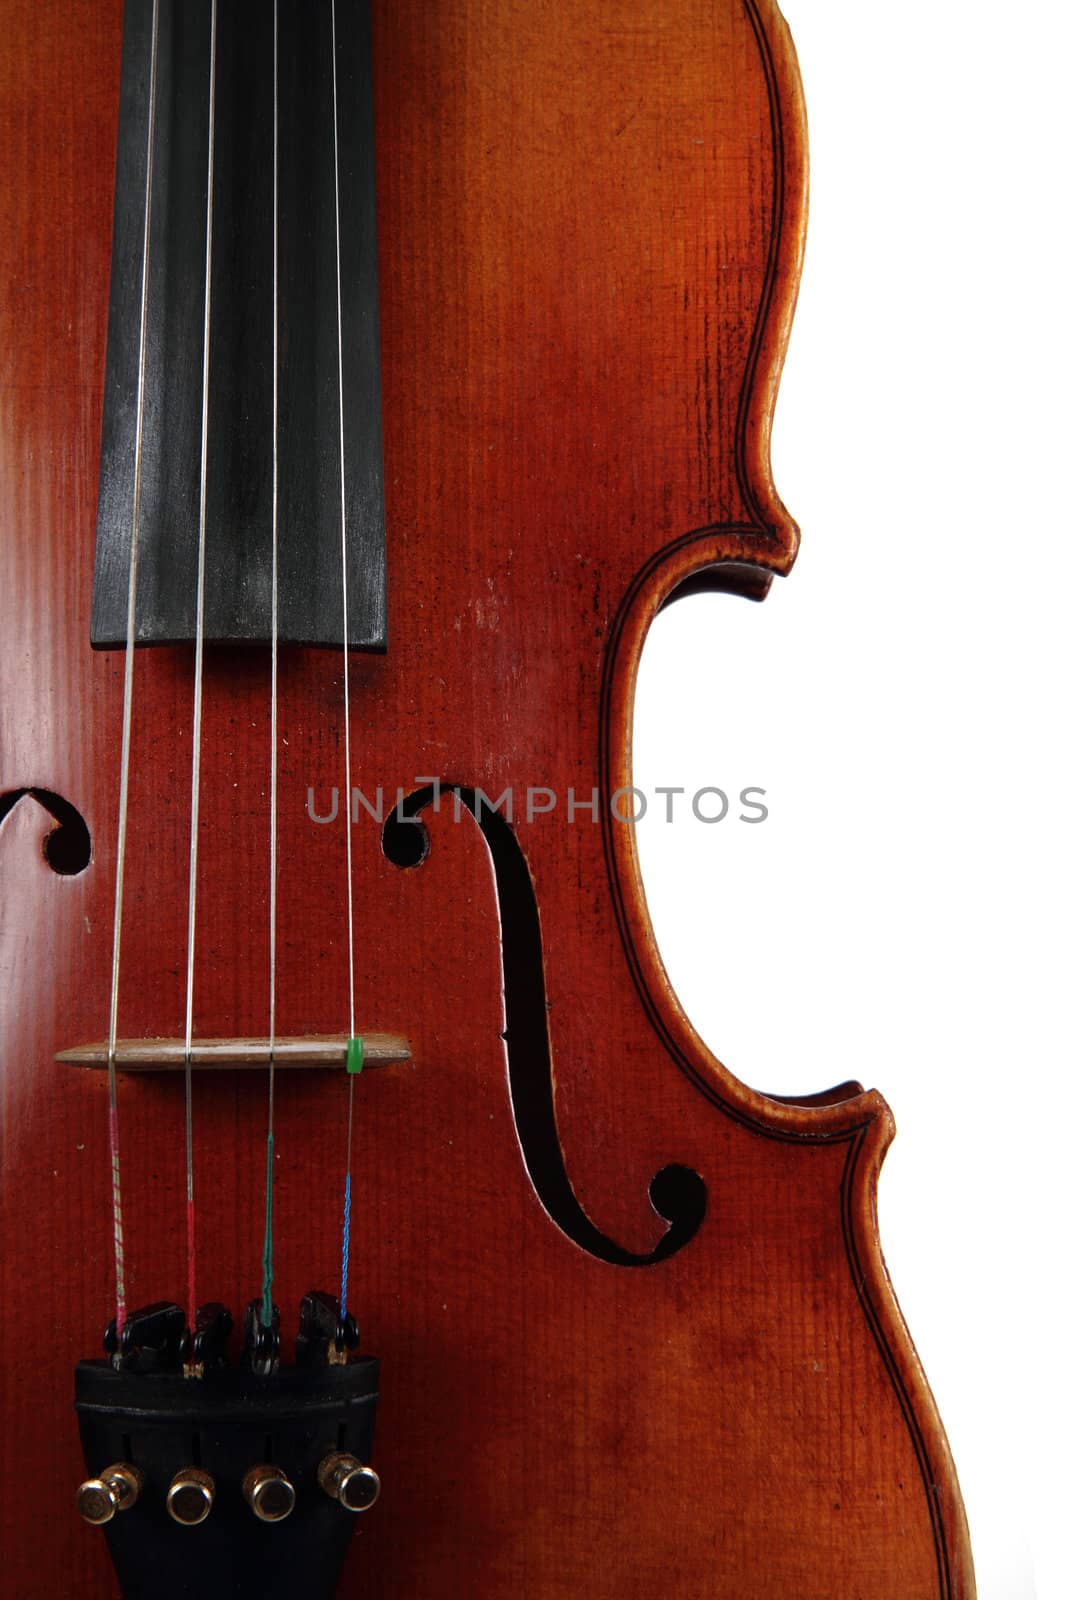 old wooden violin detail by jonnysek